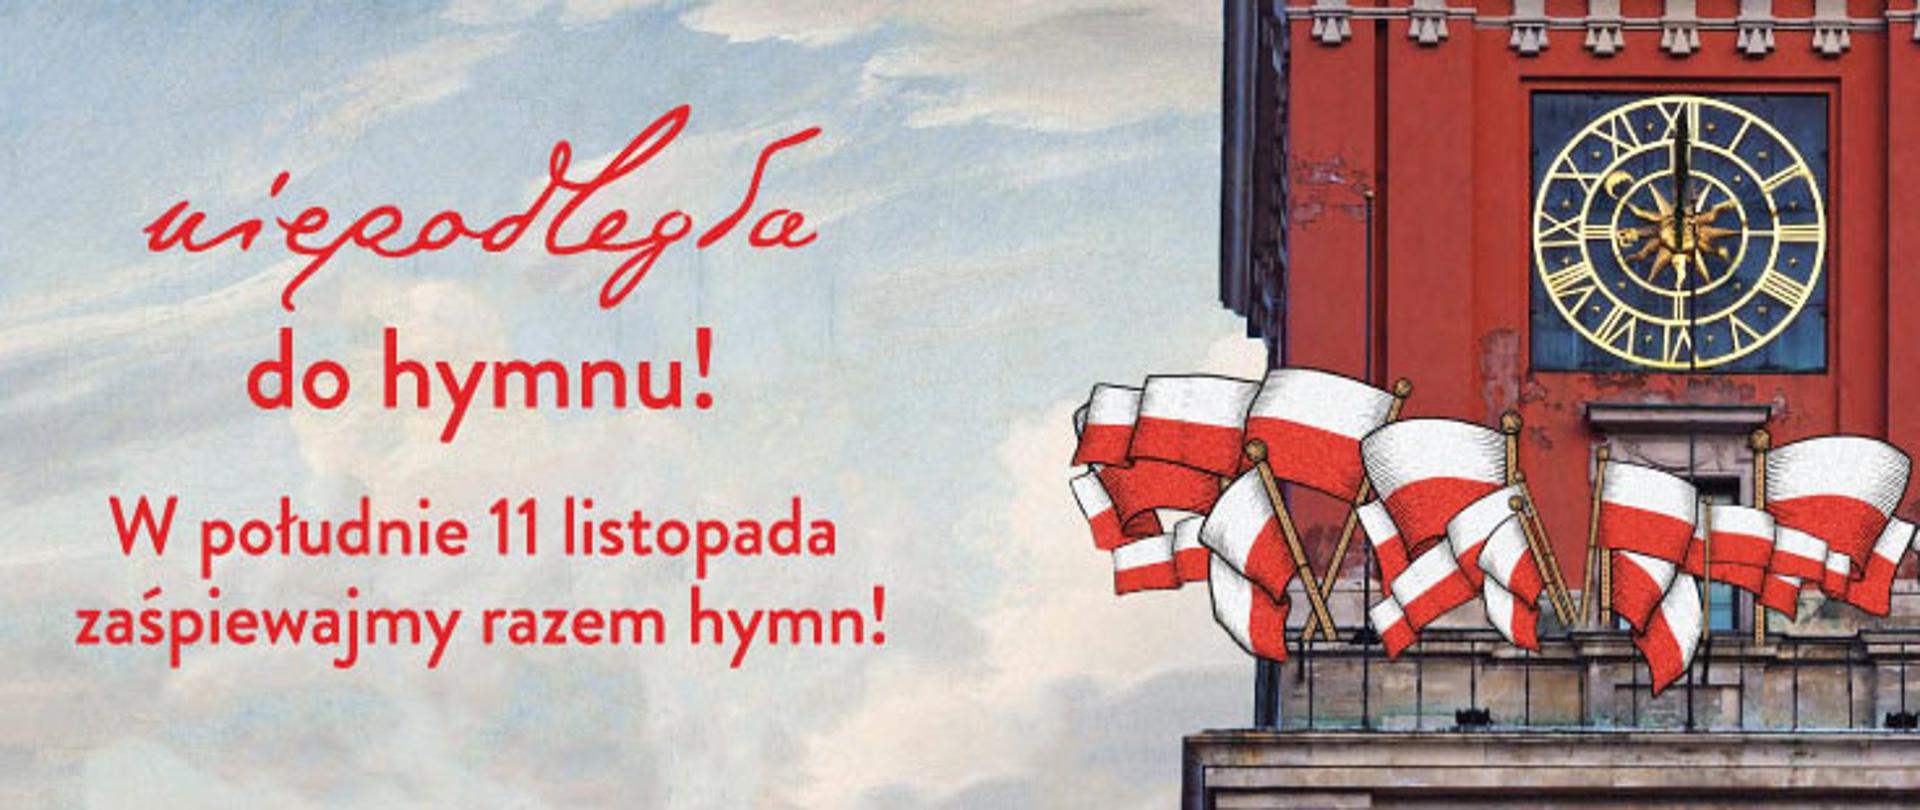 Ilustrację stanowi grafika, imitująca rysunek wykonany kredkami. Po prawej stronie kadru widać wieżę ratuszową w kolorze czerwonym, na której wywieszono biało-czerwone flagi RP.. Po lewej stronie kadru widać błękitne niebo oraz napis: Niepodległa do hymnu! W południe 11 listopada zaśpiewajmy razem hymn!